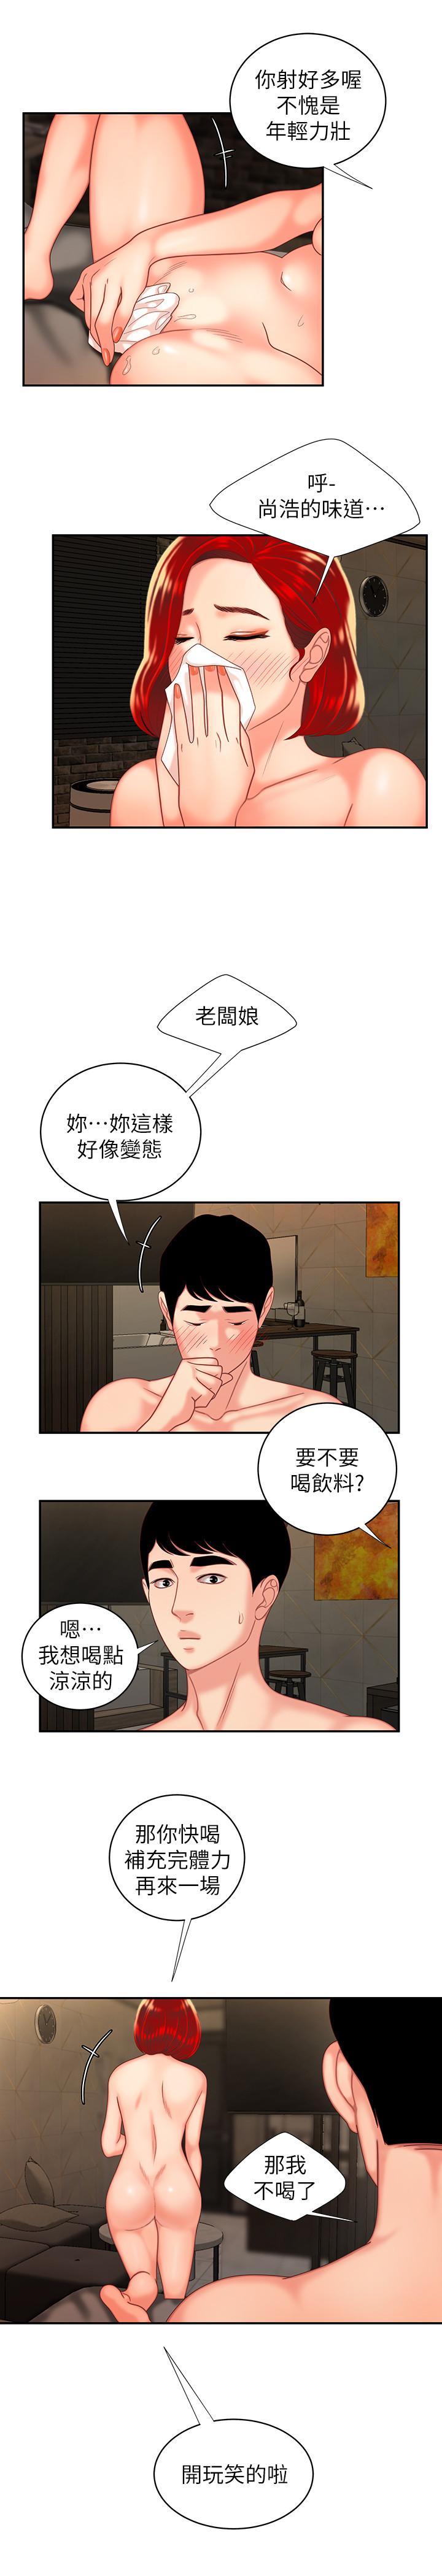 韩国污漫画 幸福外送員 第5话-老板娘溢出的蜜汁 21